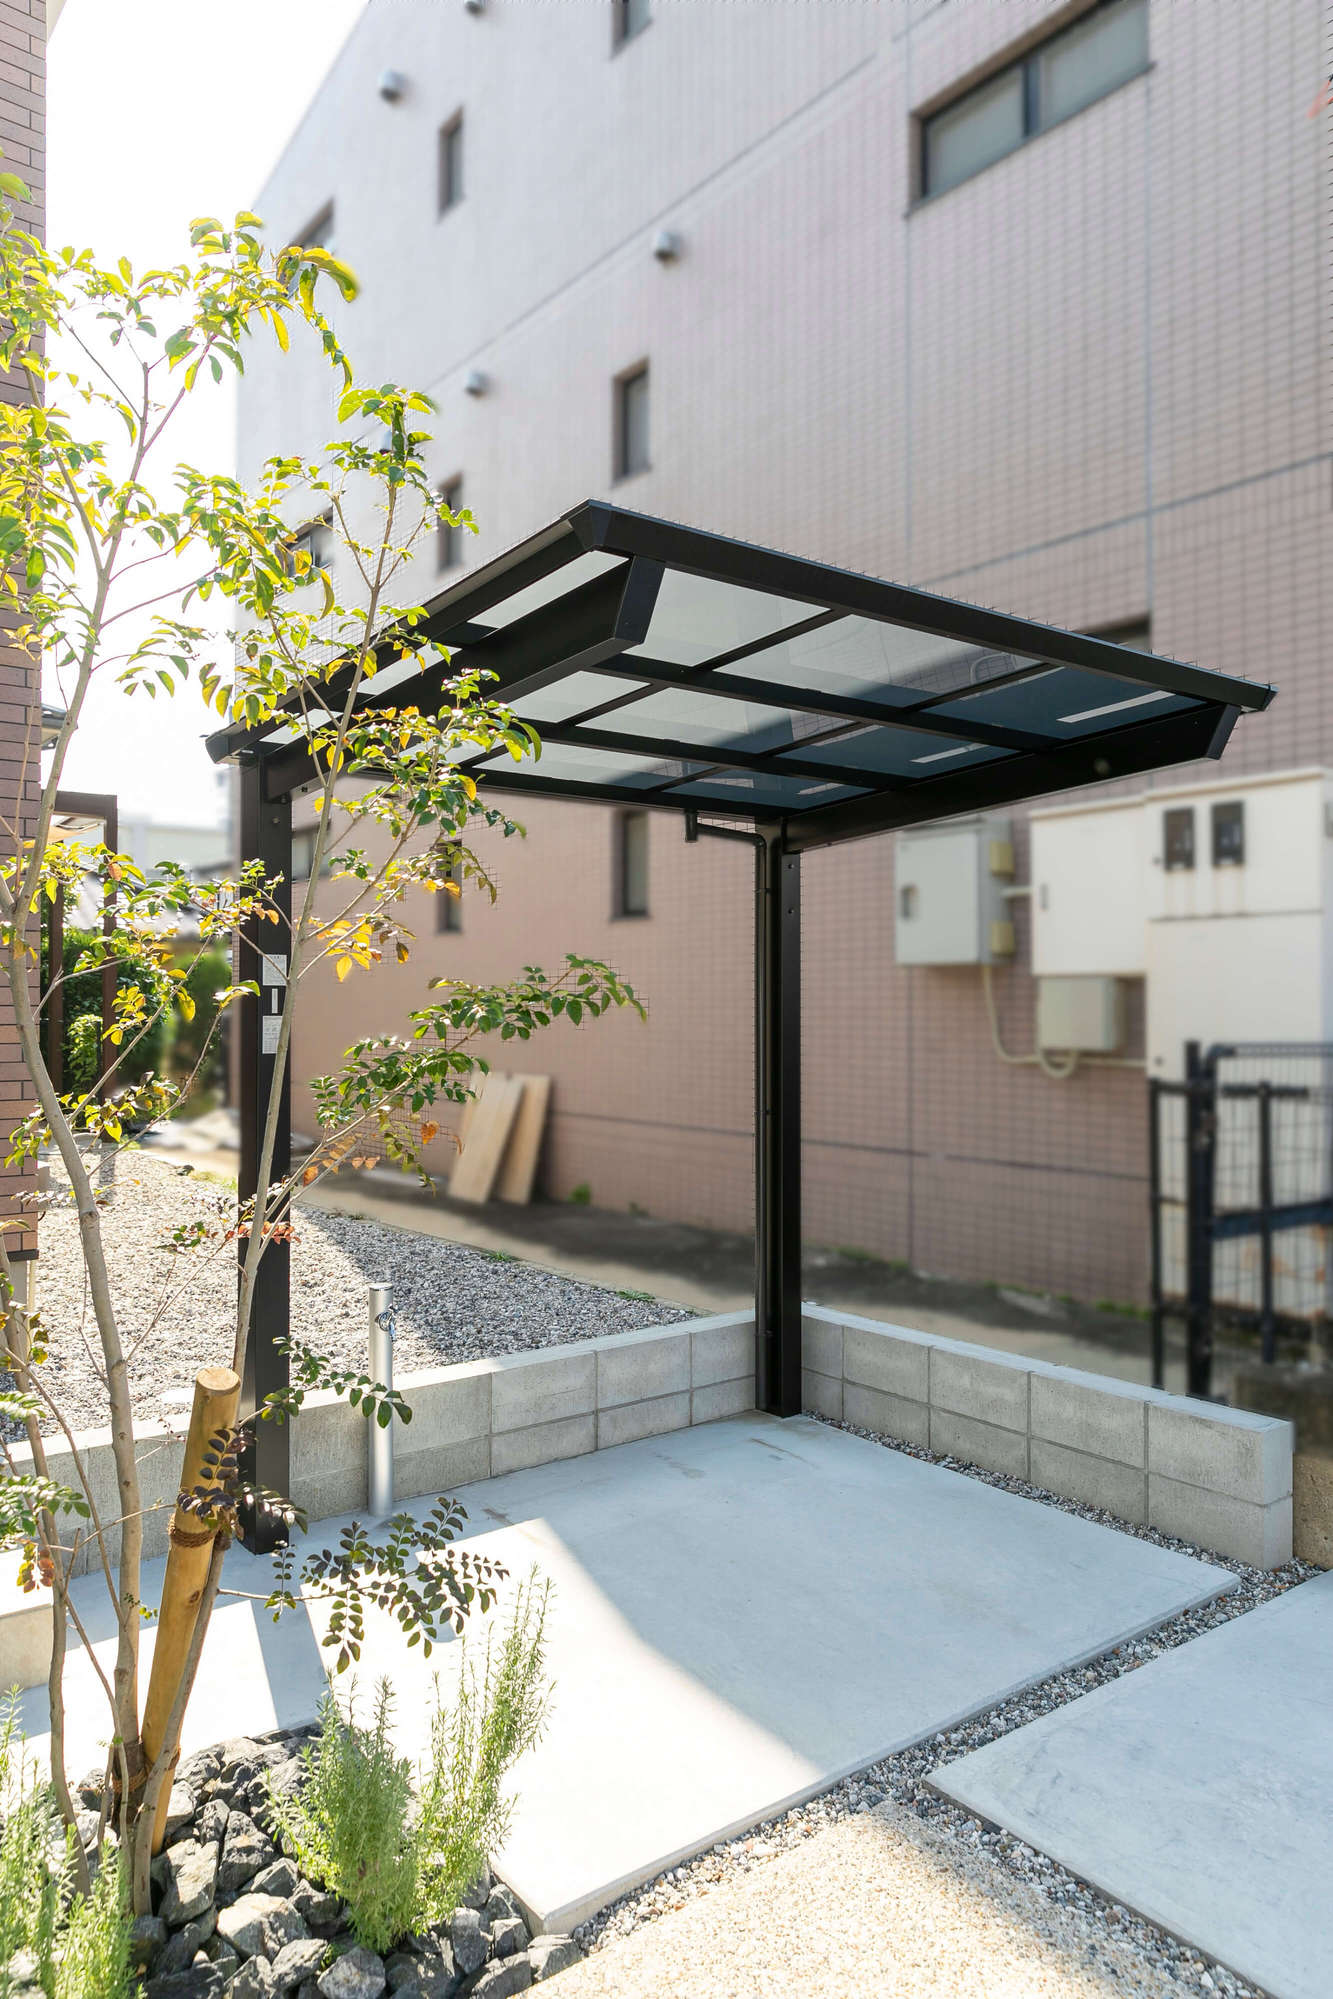 三井ホーム 新築外構 ナチュラル デザイン かわいい おしゃれ 愛知県 エクステリア 庭 ガーデンデザイン